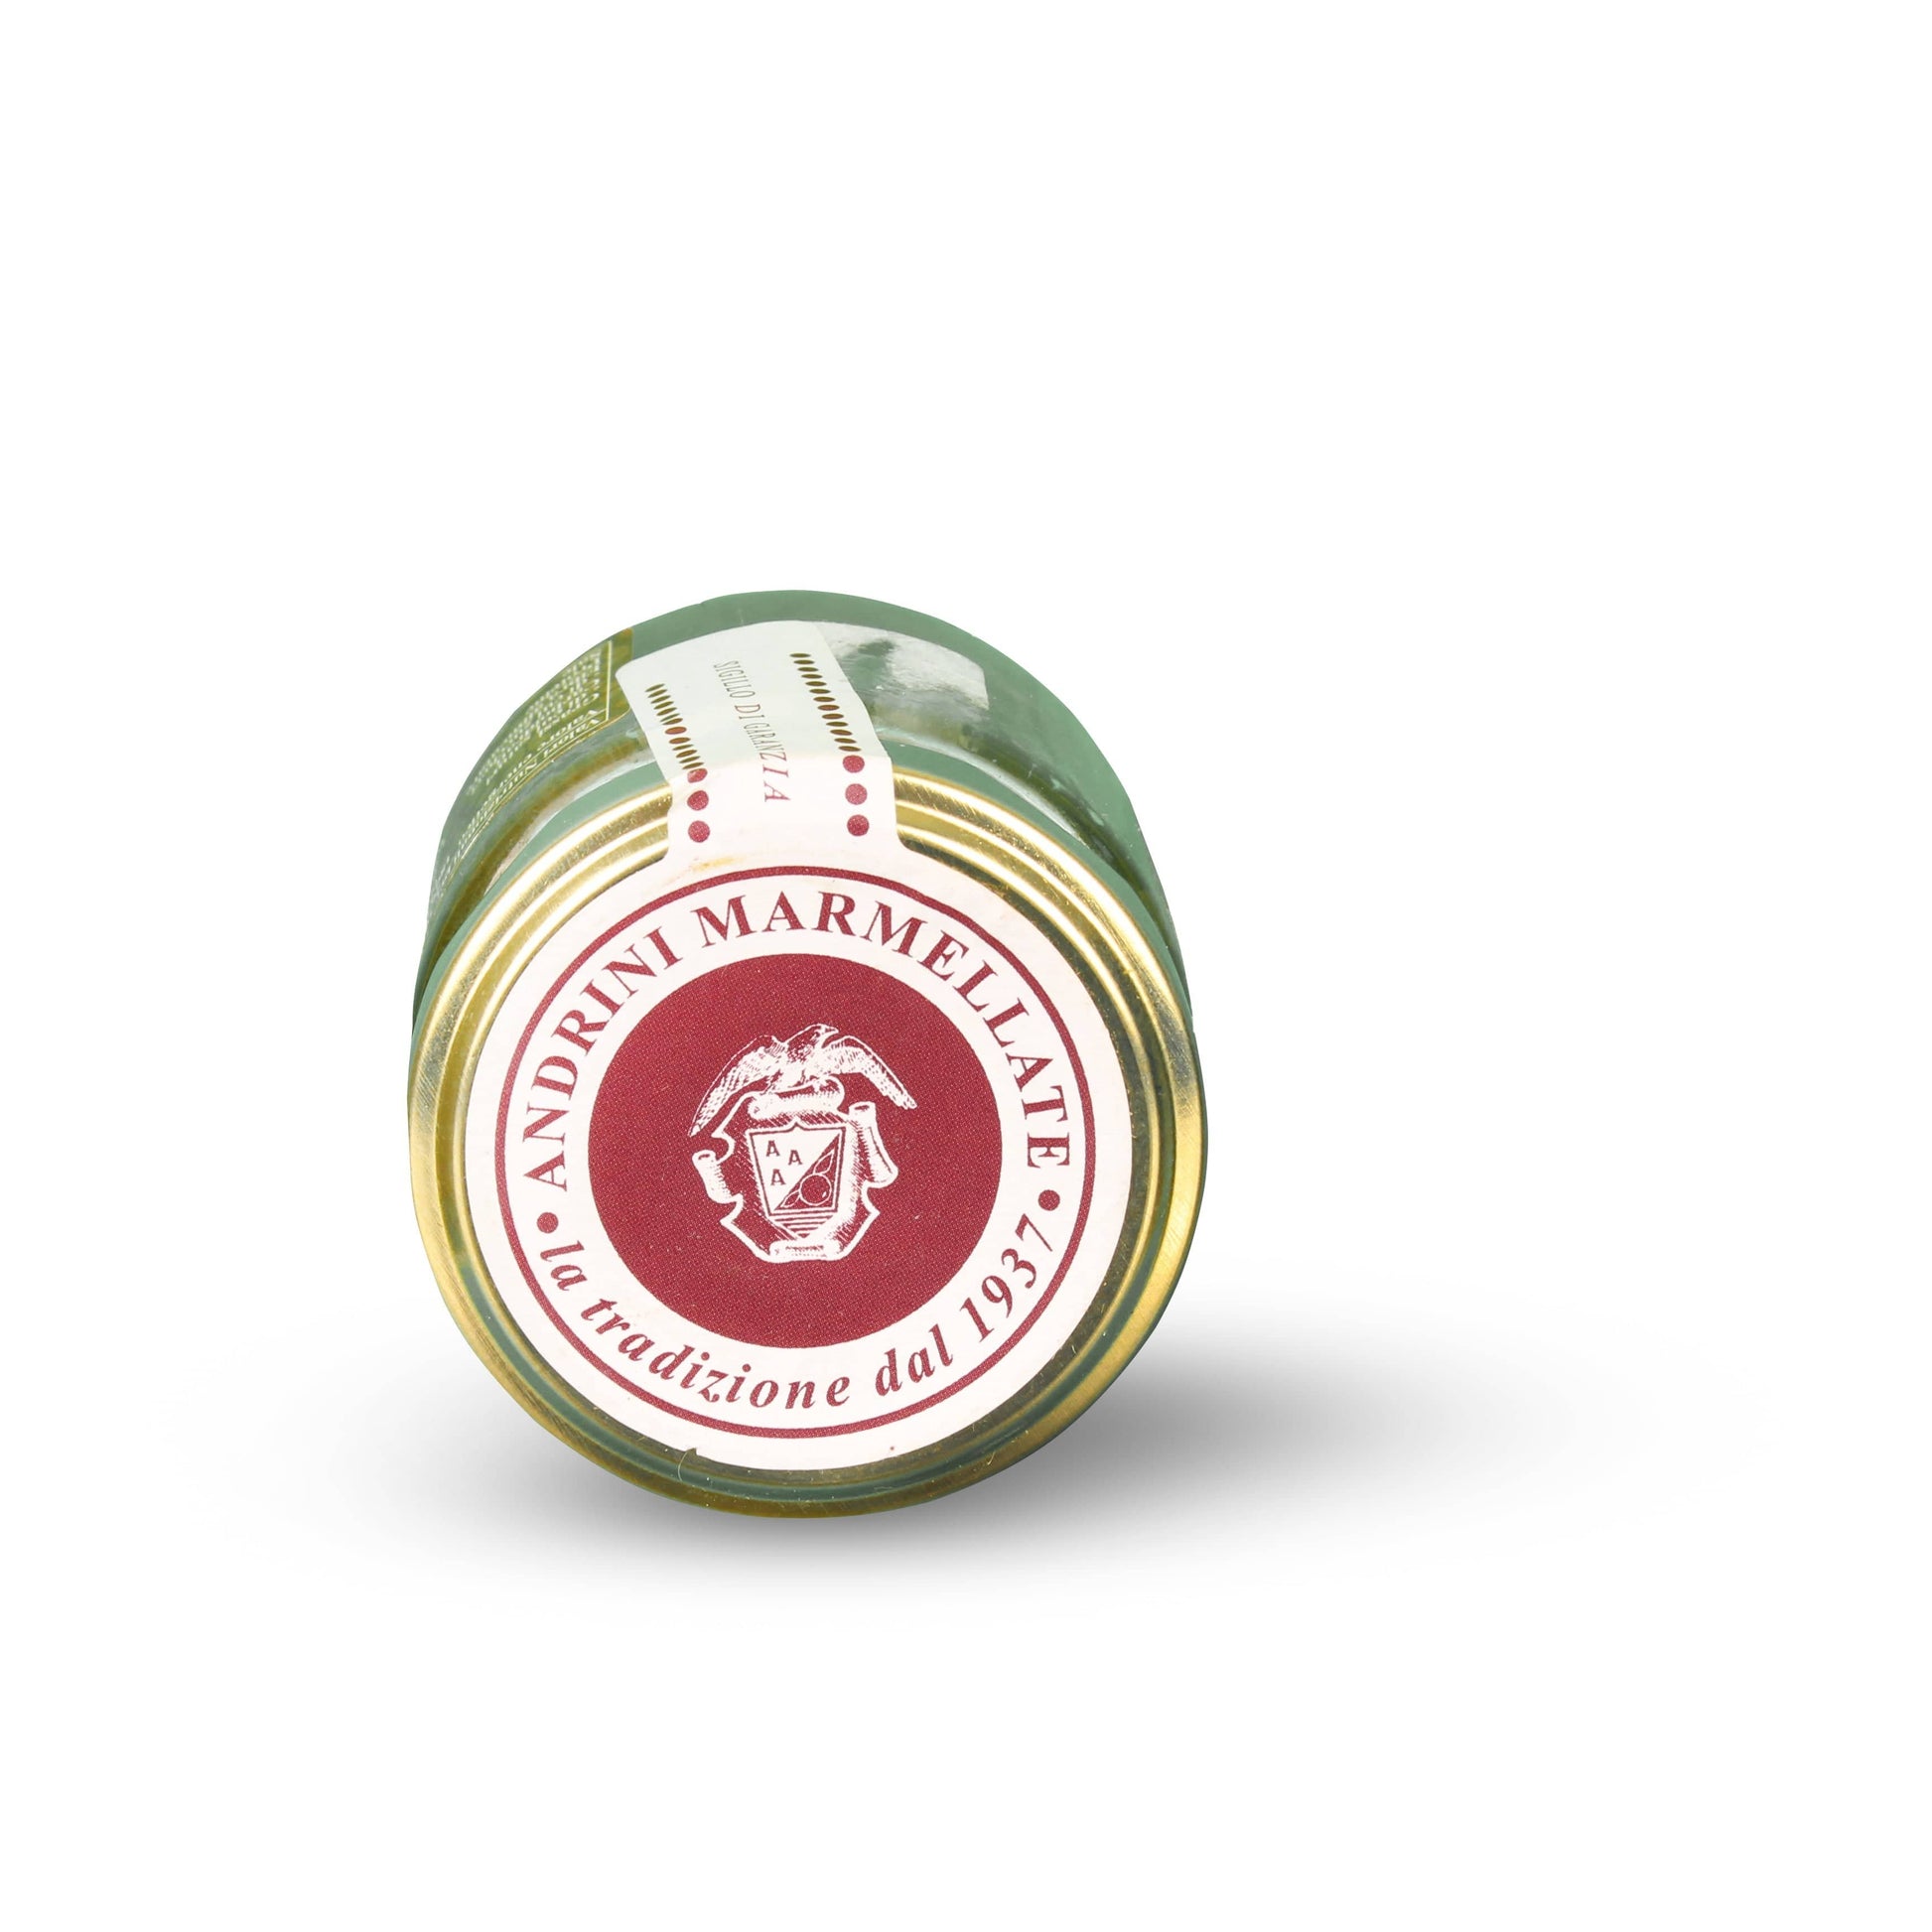 Italiving Marmelade Italienische grüne Tomatenmarmelade pikant mit 0,04% Senf - glutenfrei